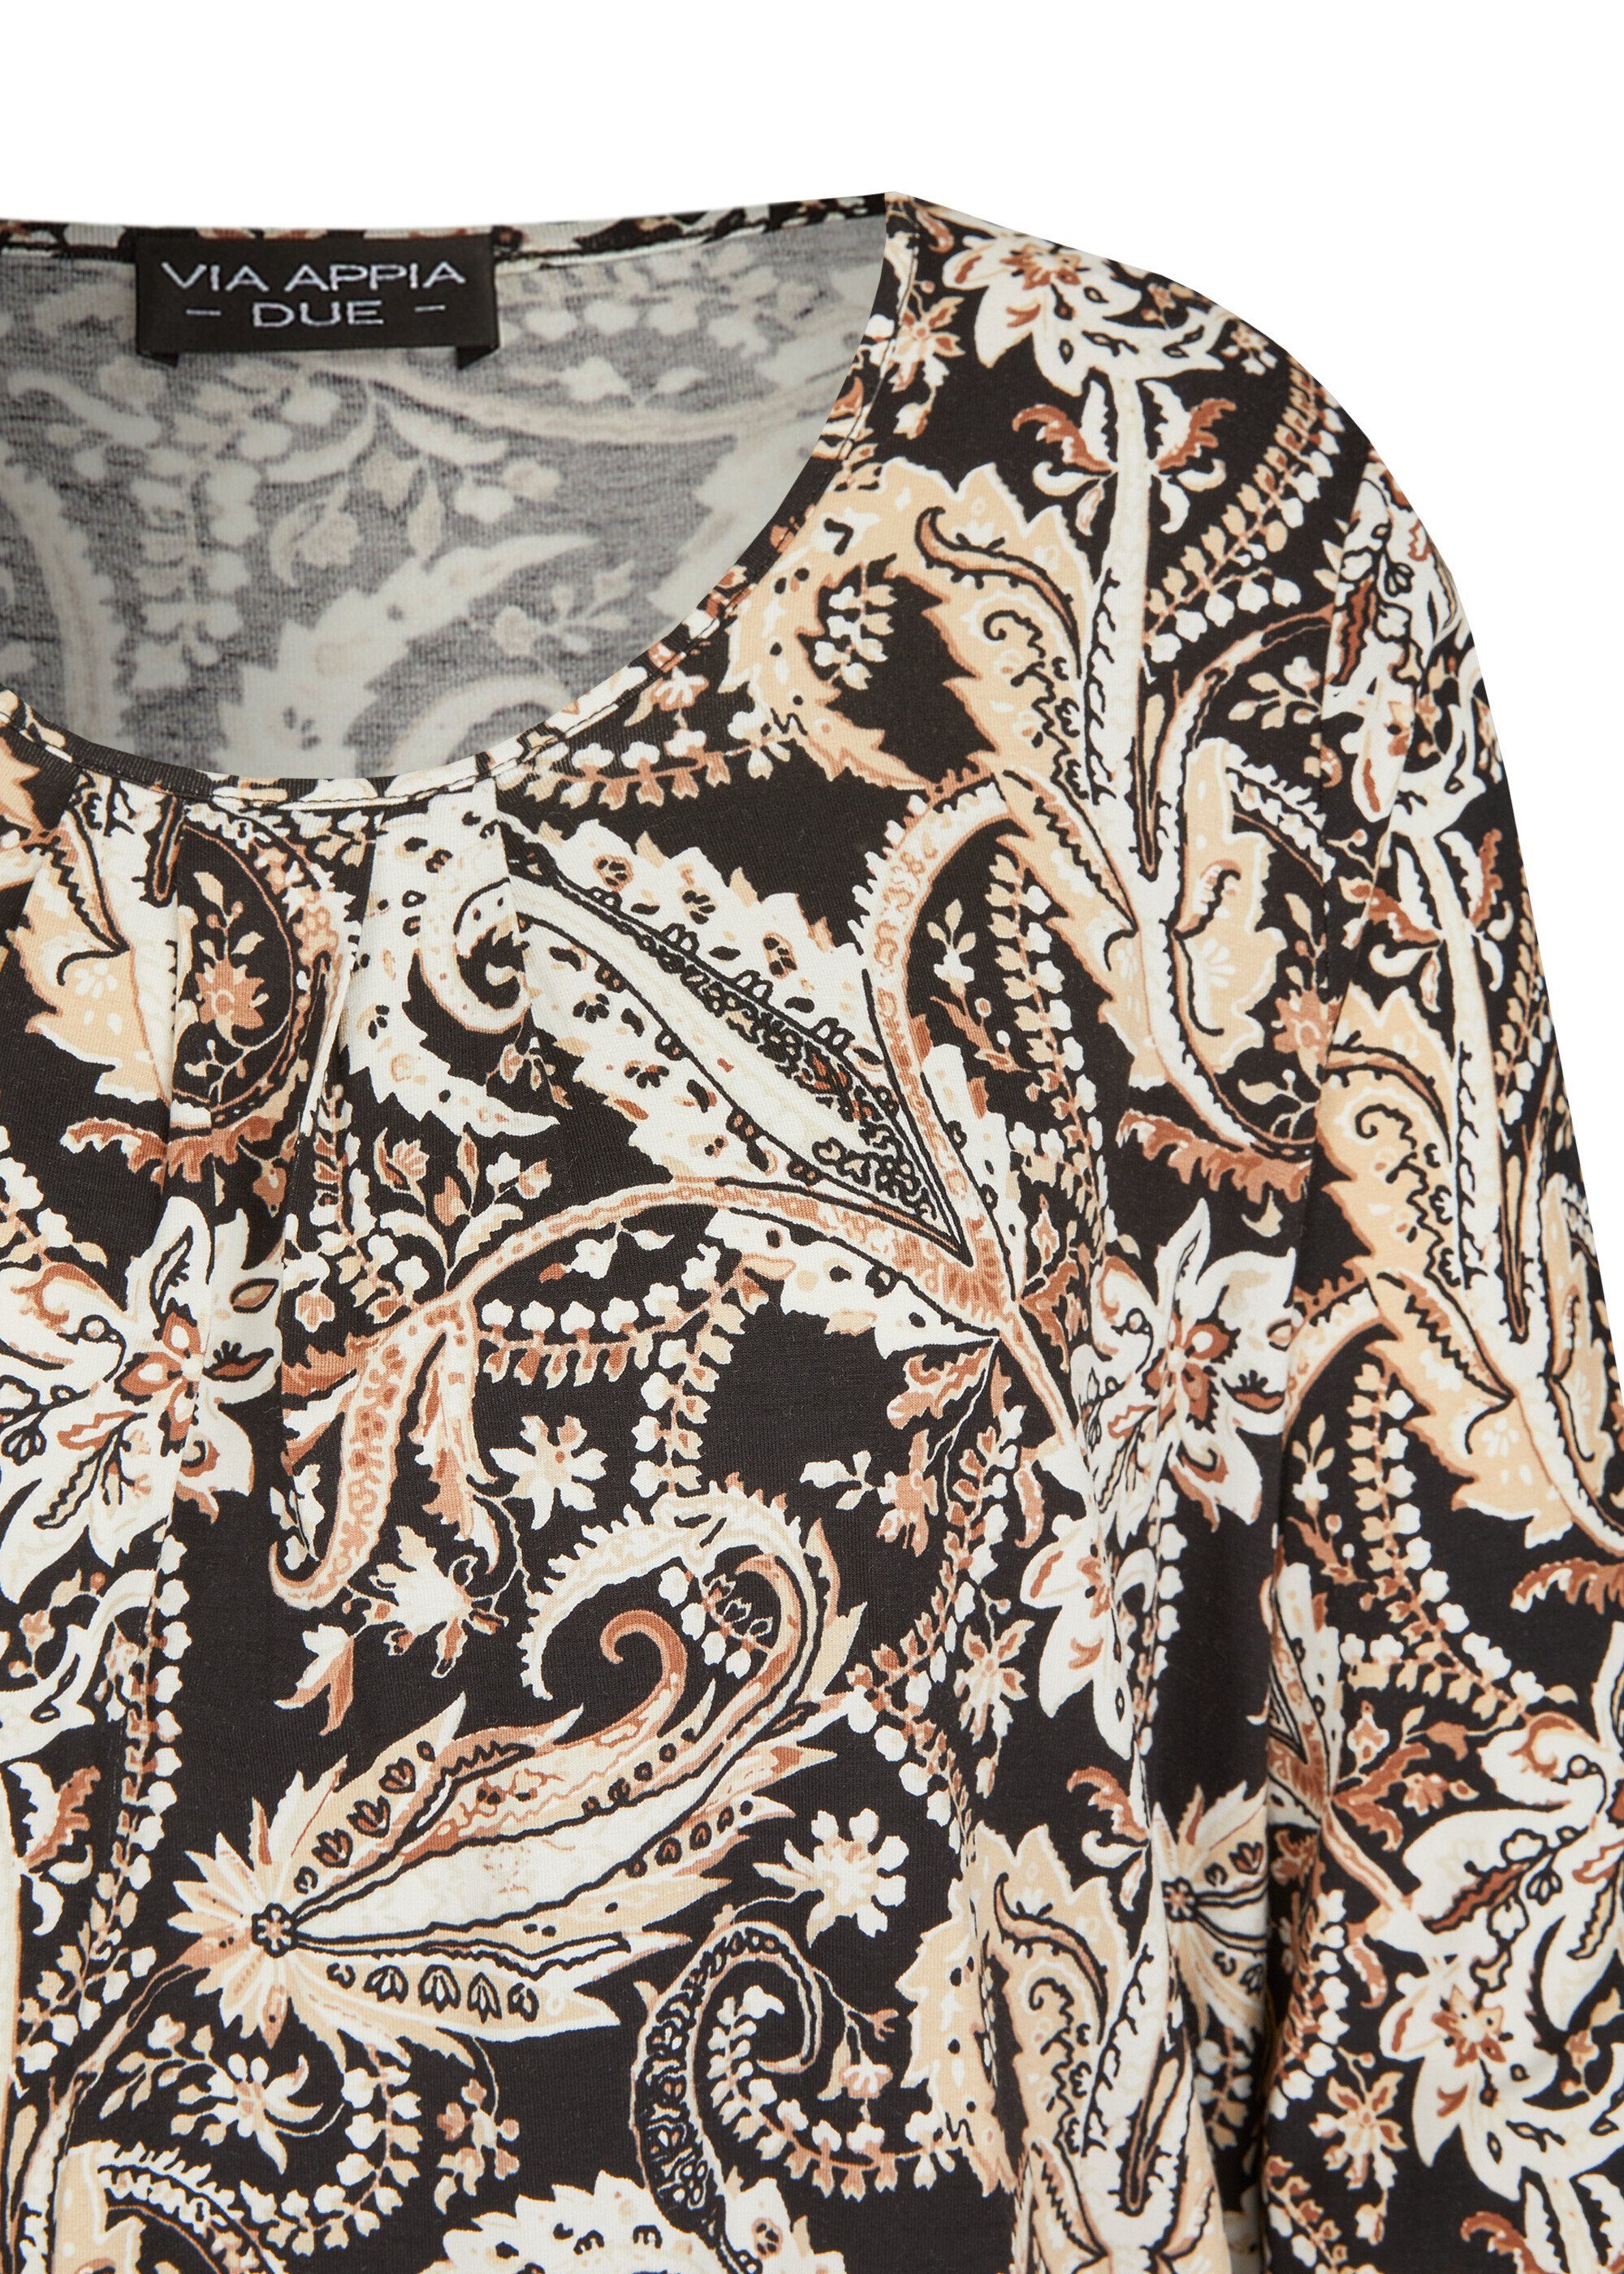 VIA APPIA DUE Print-Shirt Verspieltes Muster schwarz multicolor floralem 3/4-Arm-Shirt mit